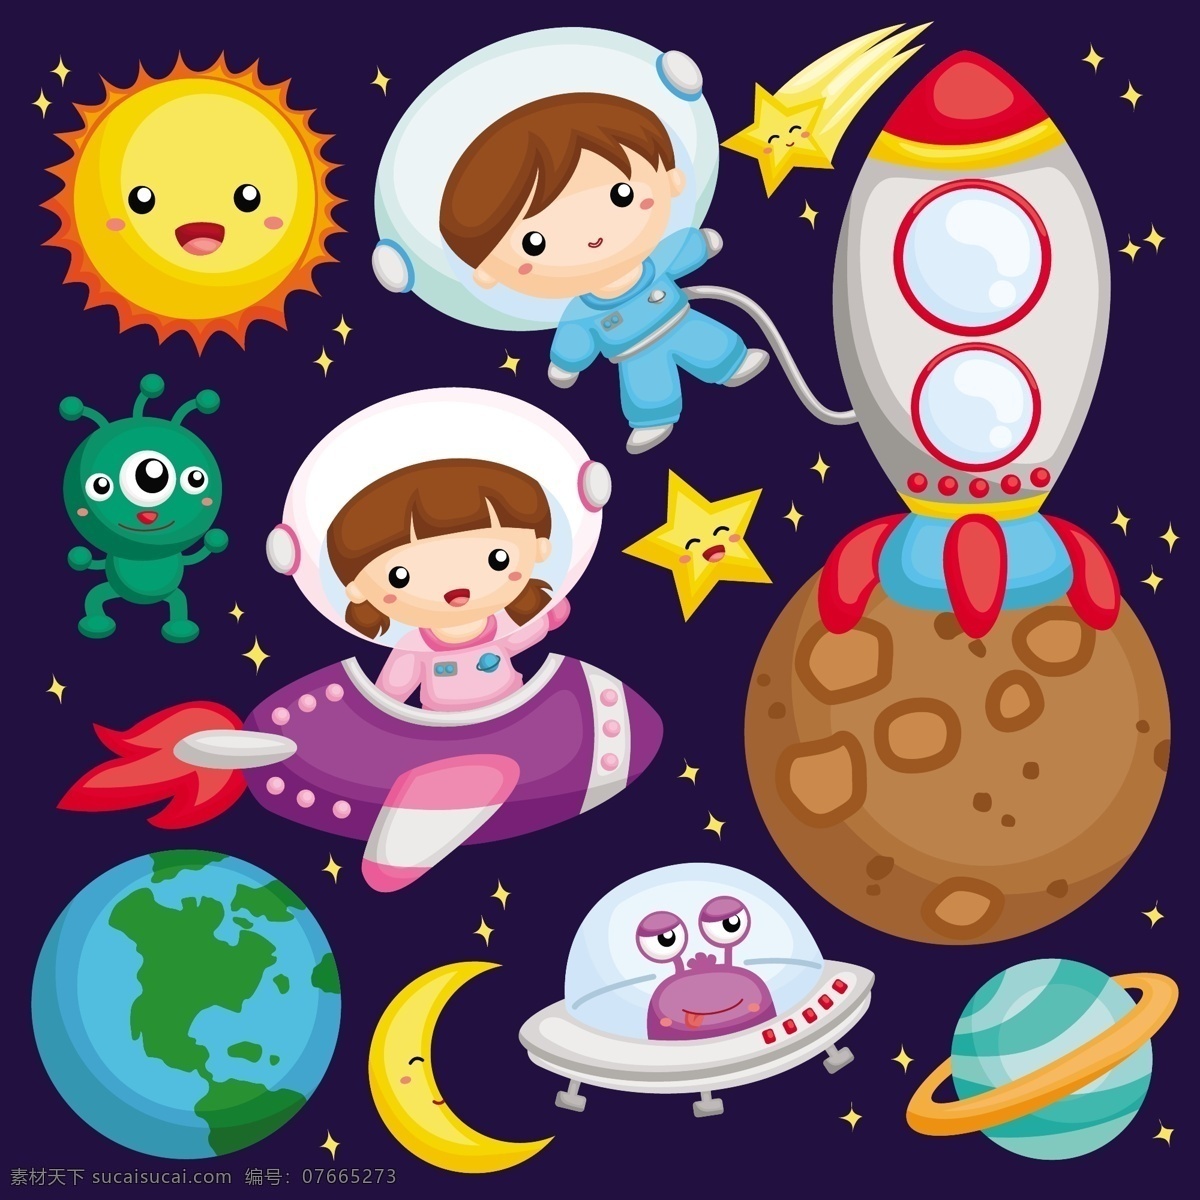 宇宙 外 太空 创意 插画 卡通 可爱 儿童 人物 宇航员 墙绘 海报 生日卡片 背景矢量 星球 球体 外太空 宇宙飞船 动漫动画